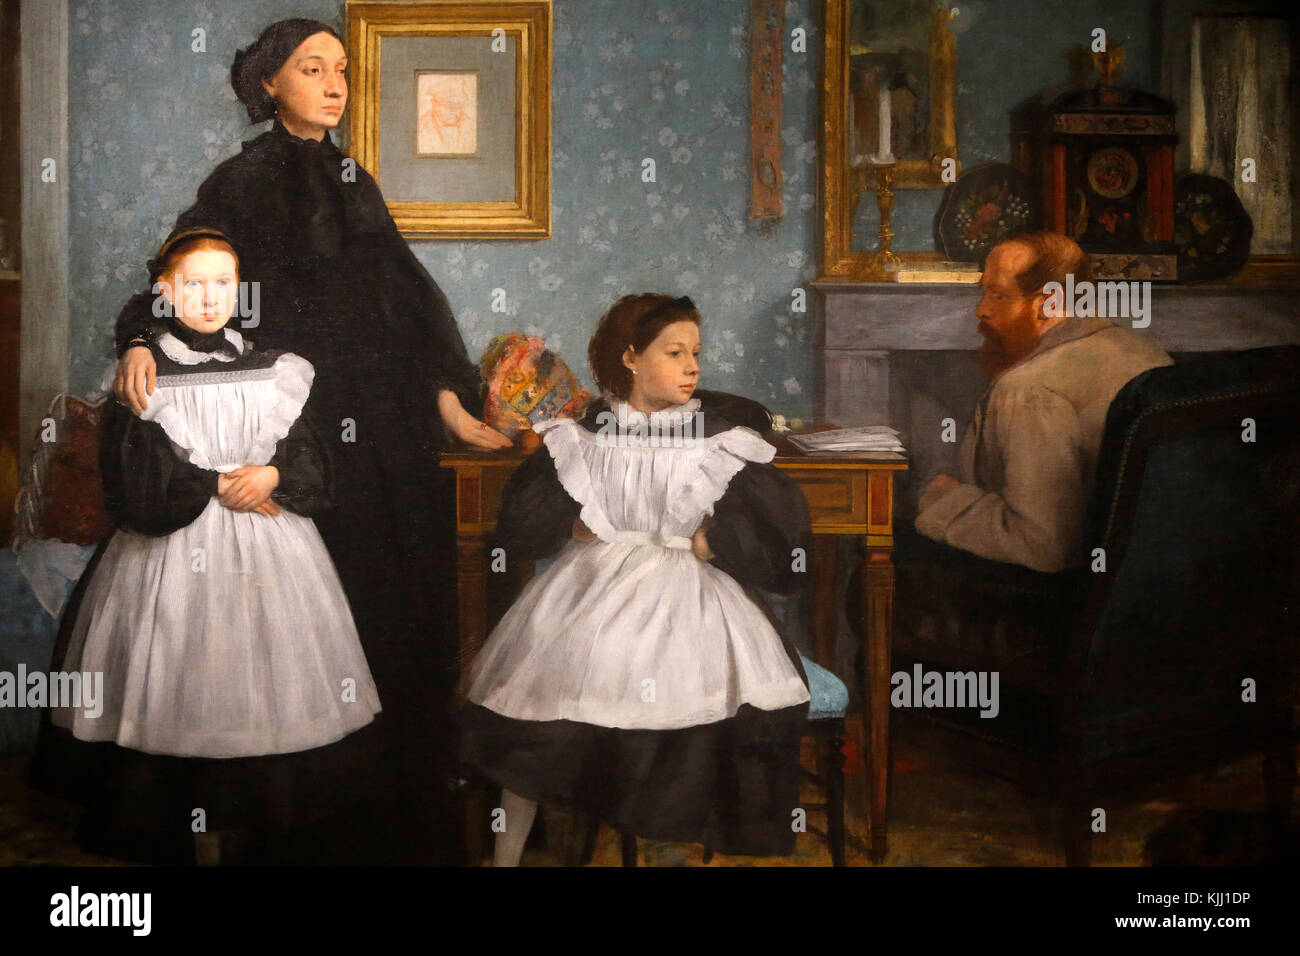 Museum Orsay. Edgar Degas. Family Portrait, auch als die Familie Bellelli bekannt. Öl auf Leinwand, zwischen 1858 und 1869. Frankreich. Stockfoto